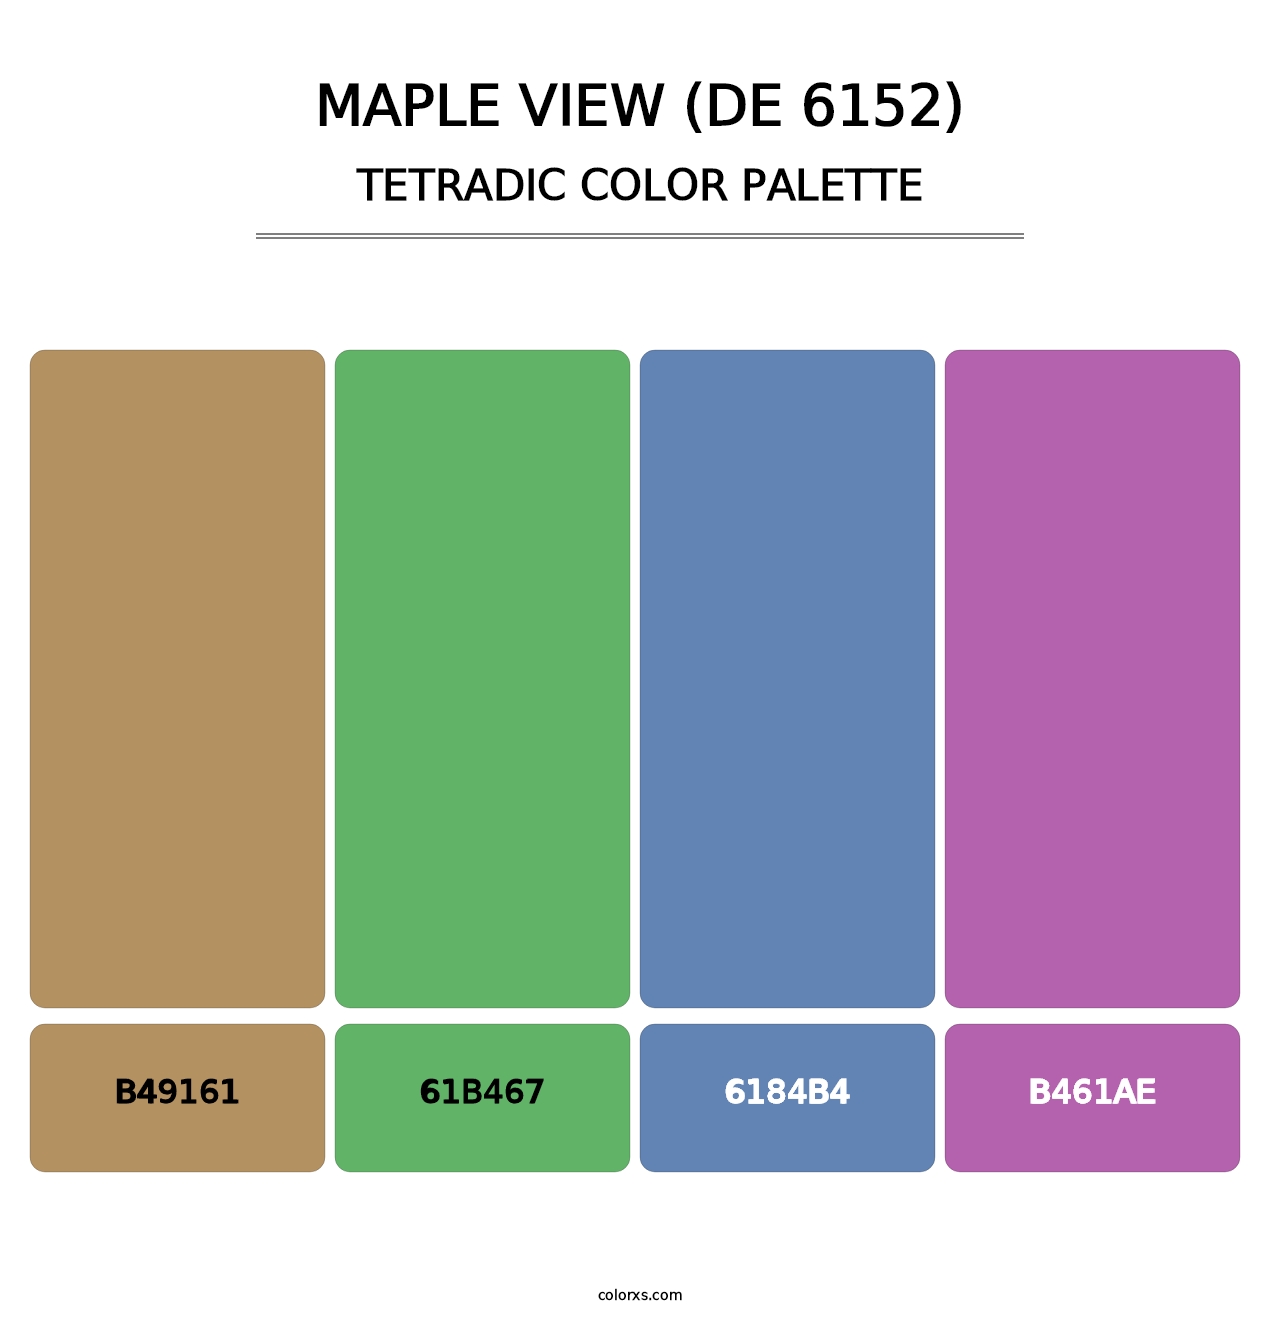 Maple View (DE 6152) - Tetradic Color Palette